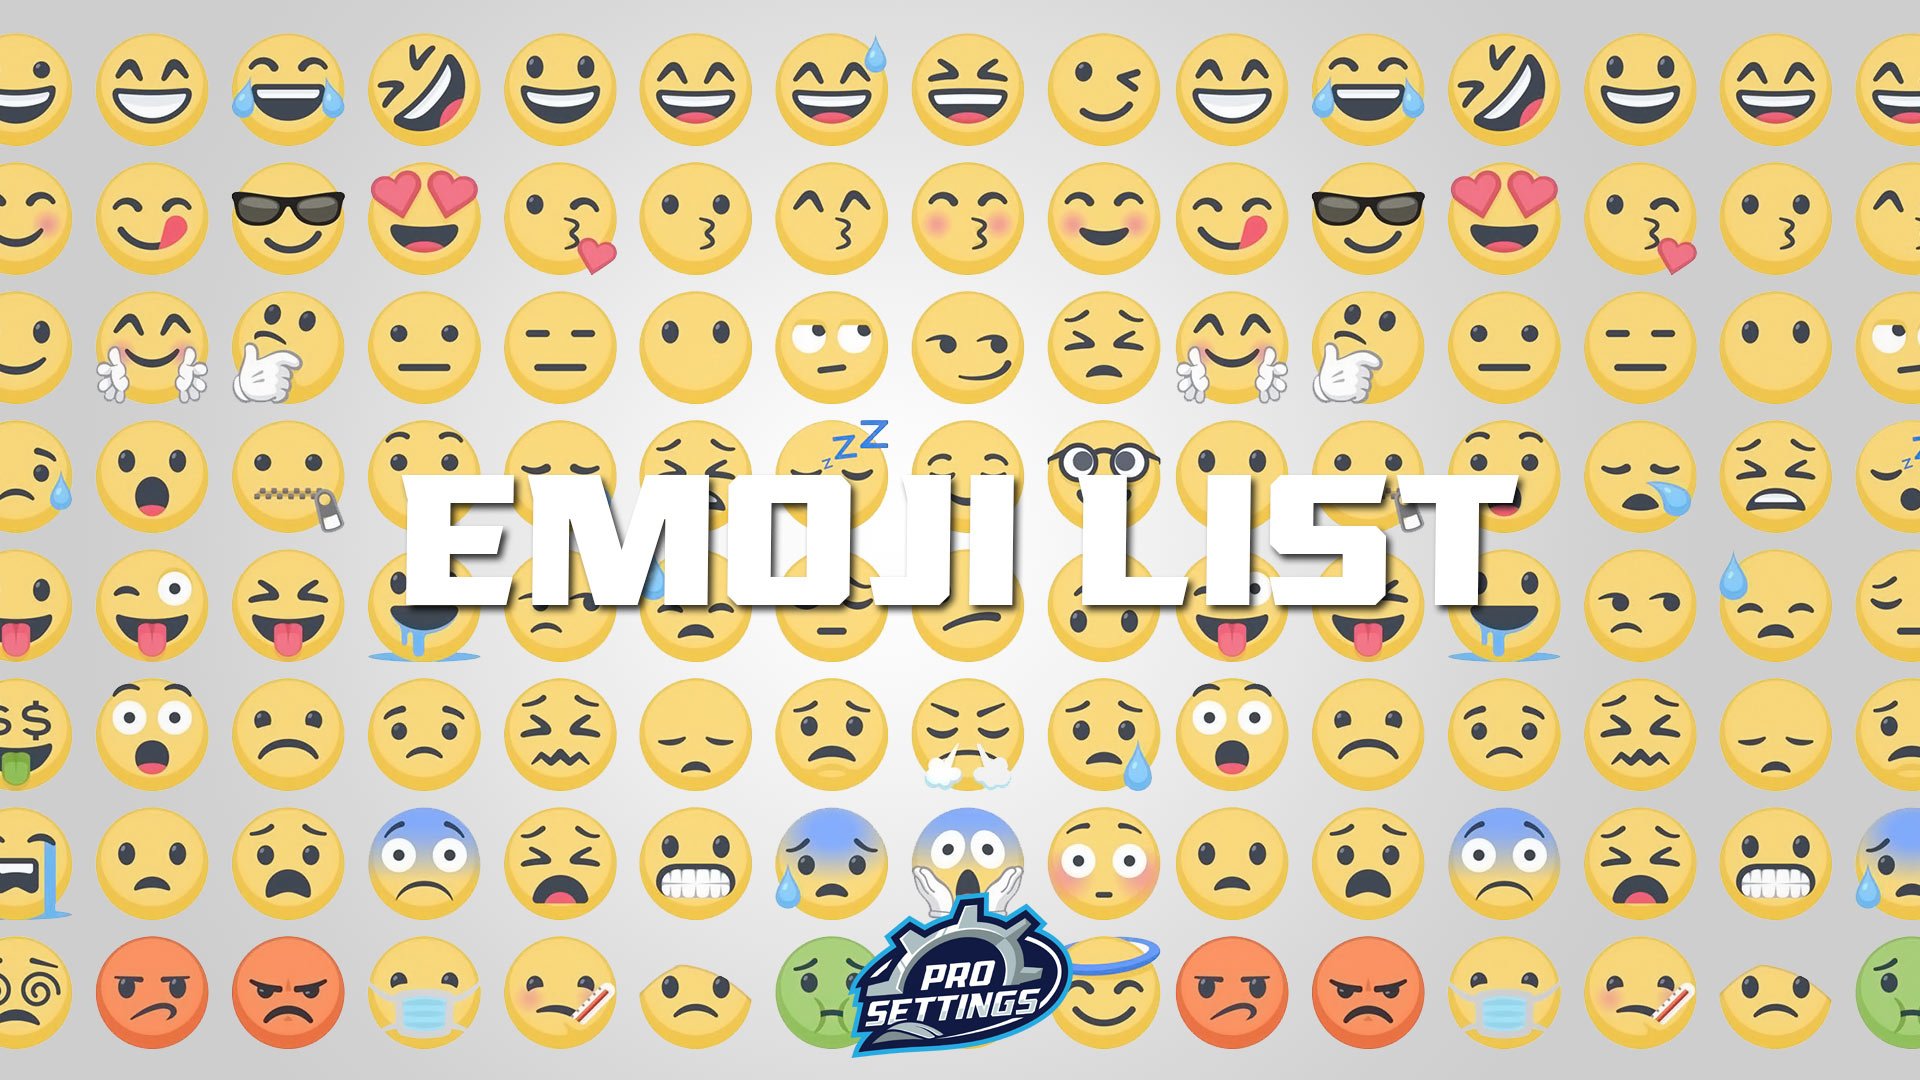 Full List Of Emojis 21 Prosettings Com